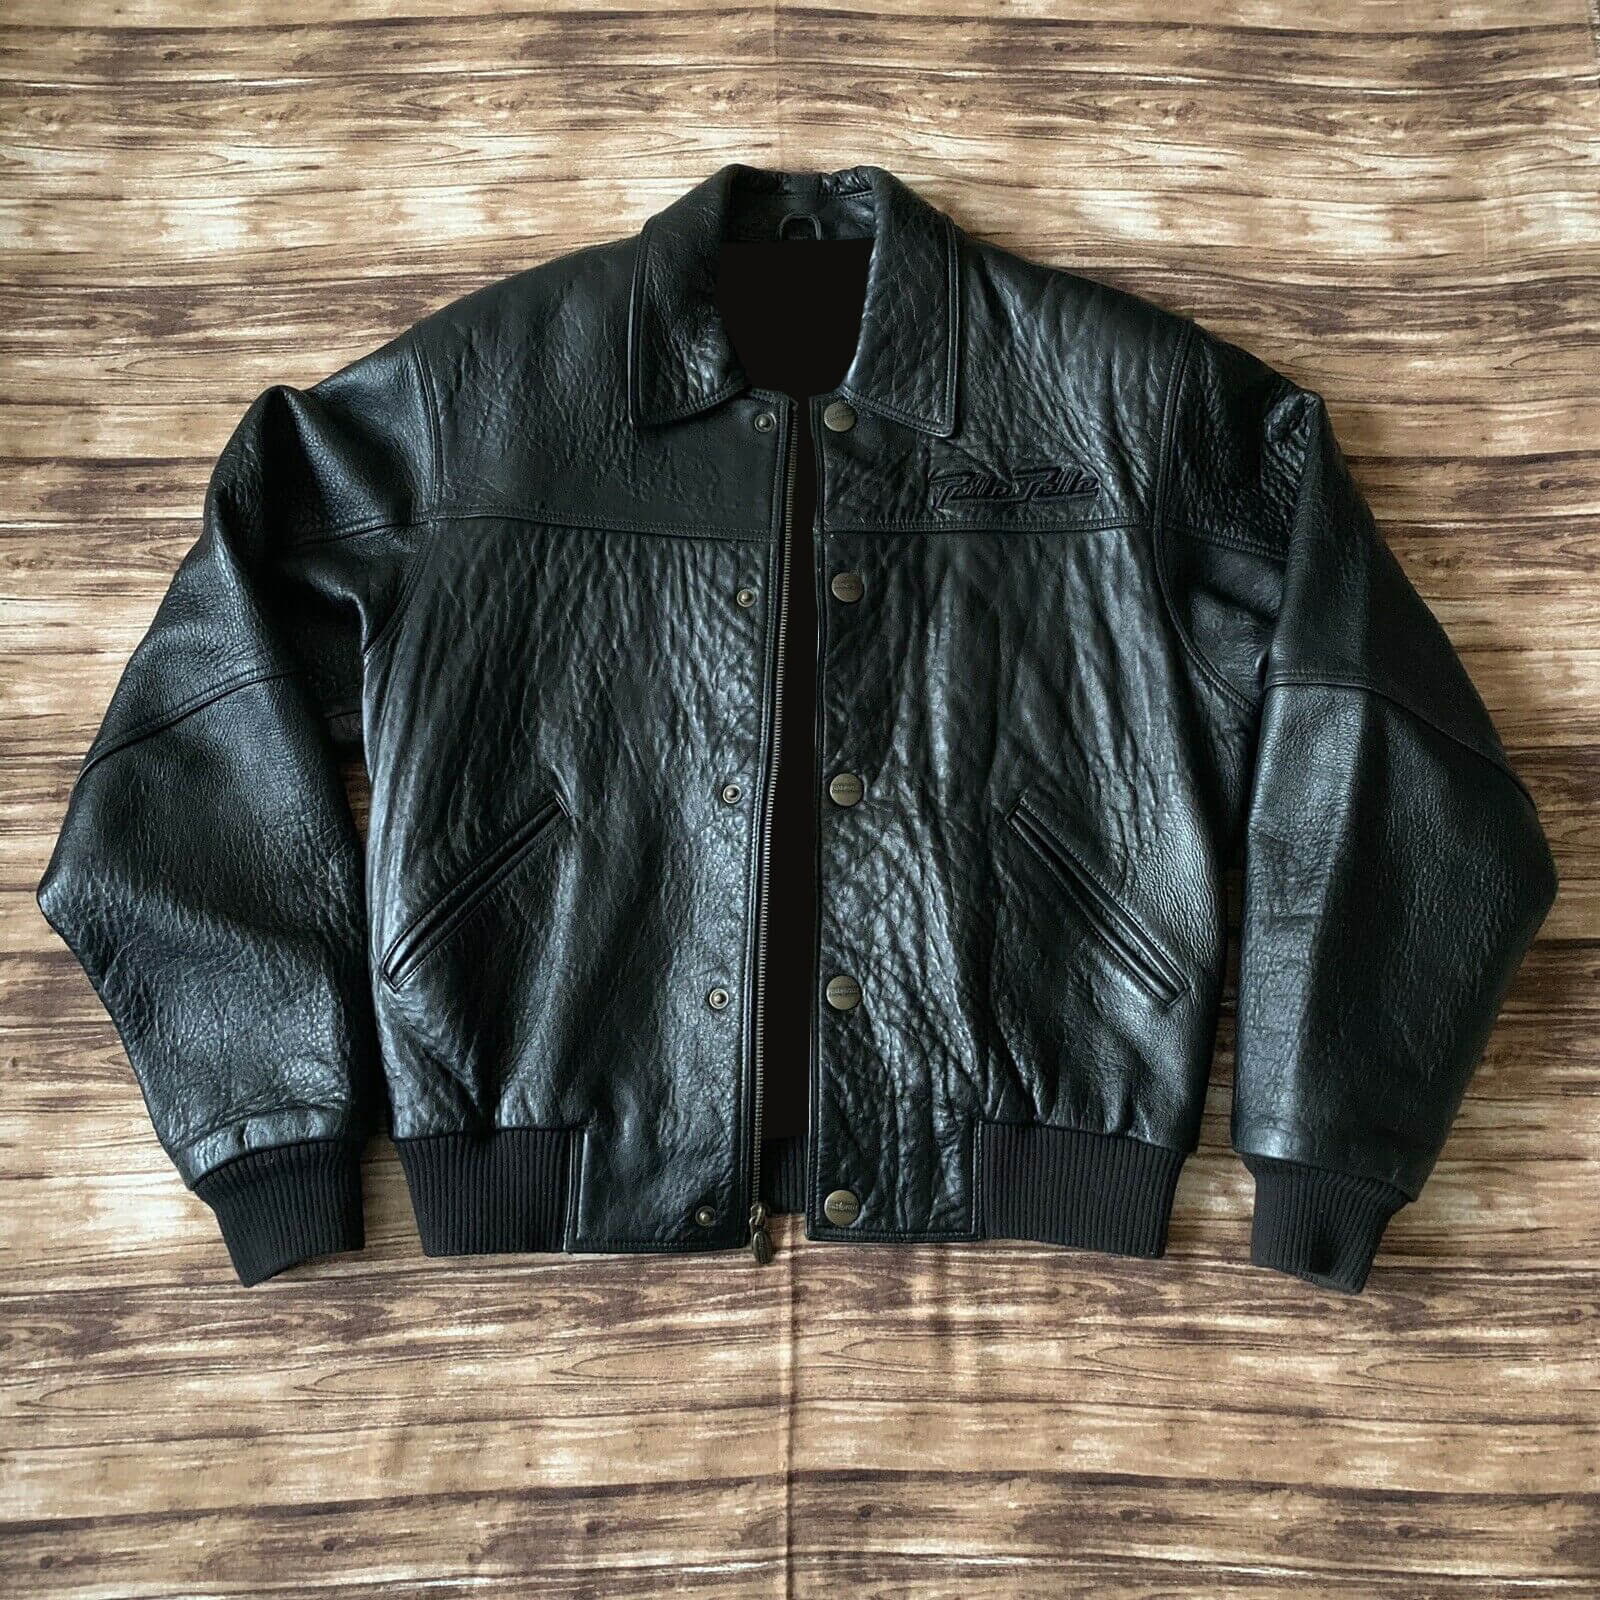 Pelle Pelle Black Tiger Leather Jacket - Maker of Jacket